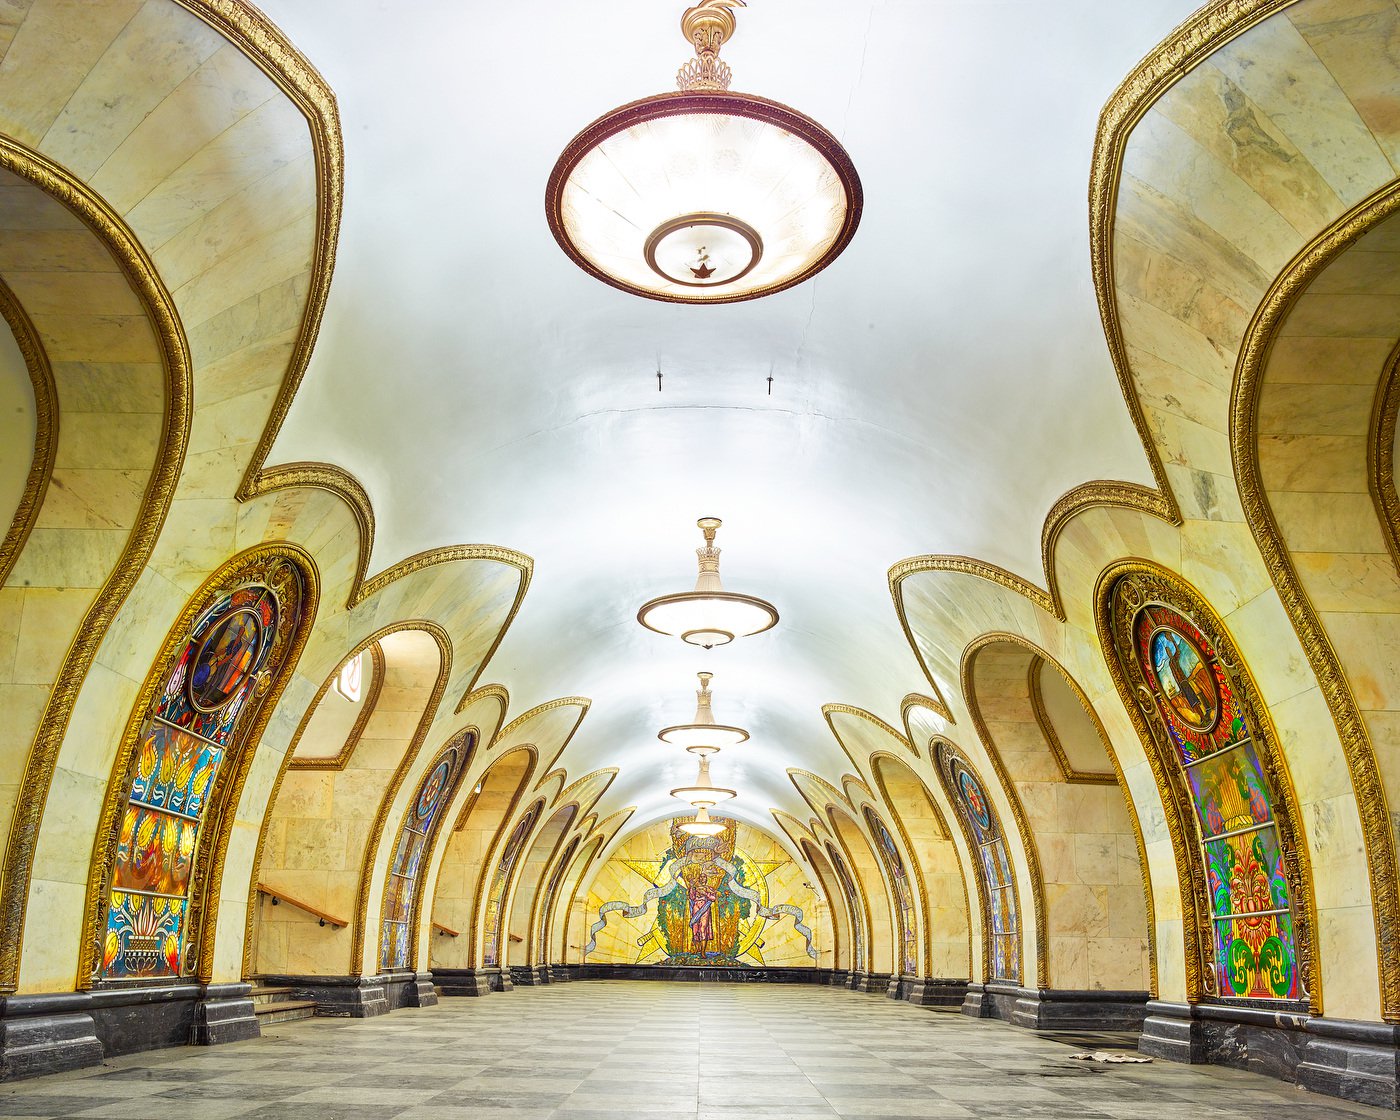 метро москвы красивые станции